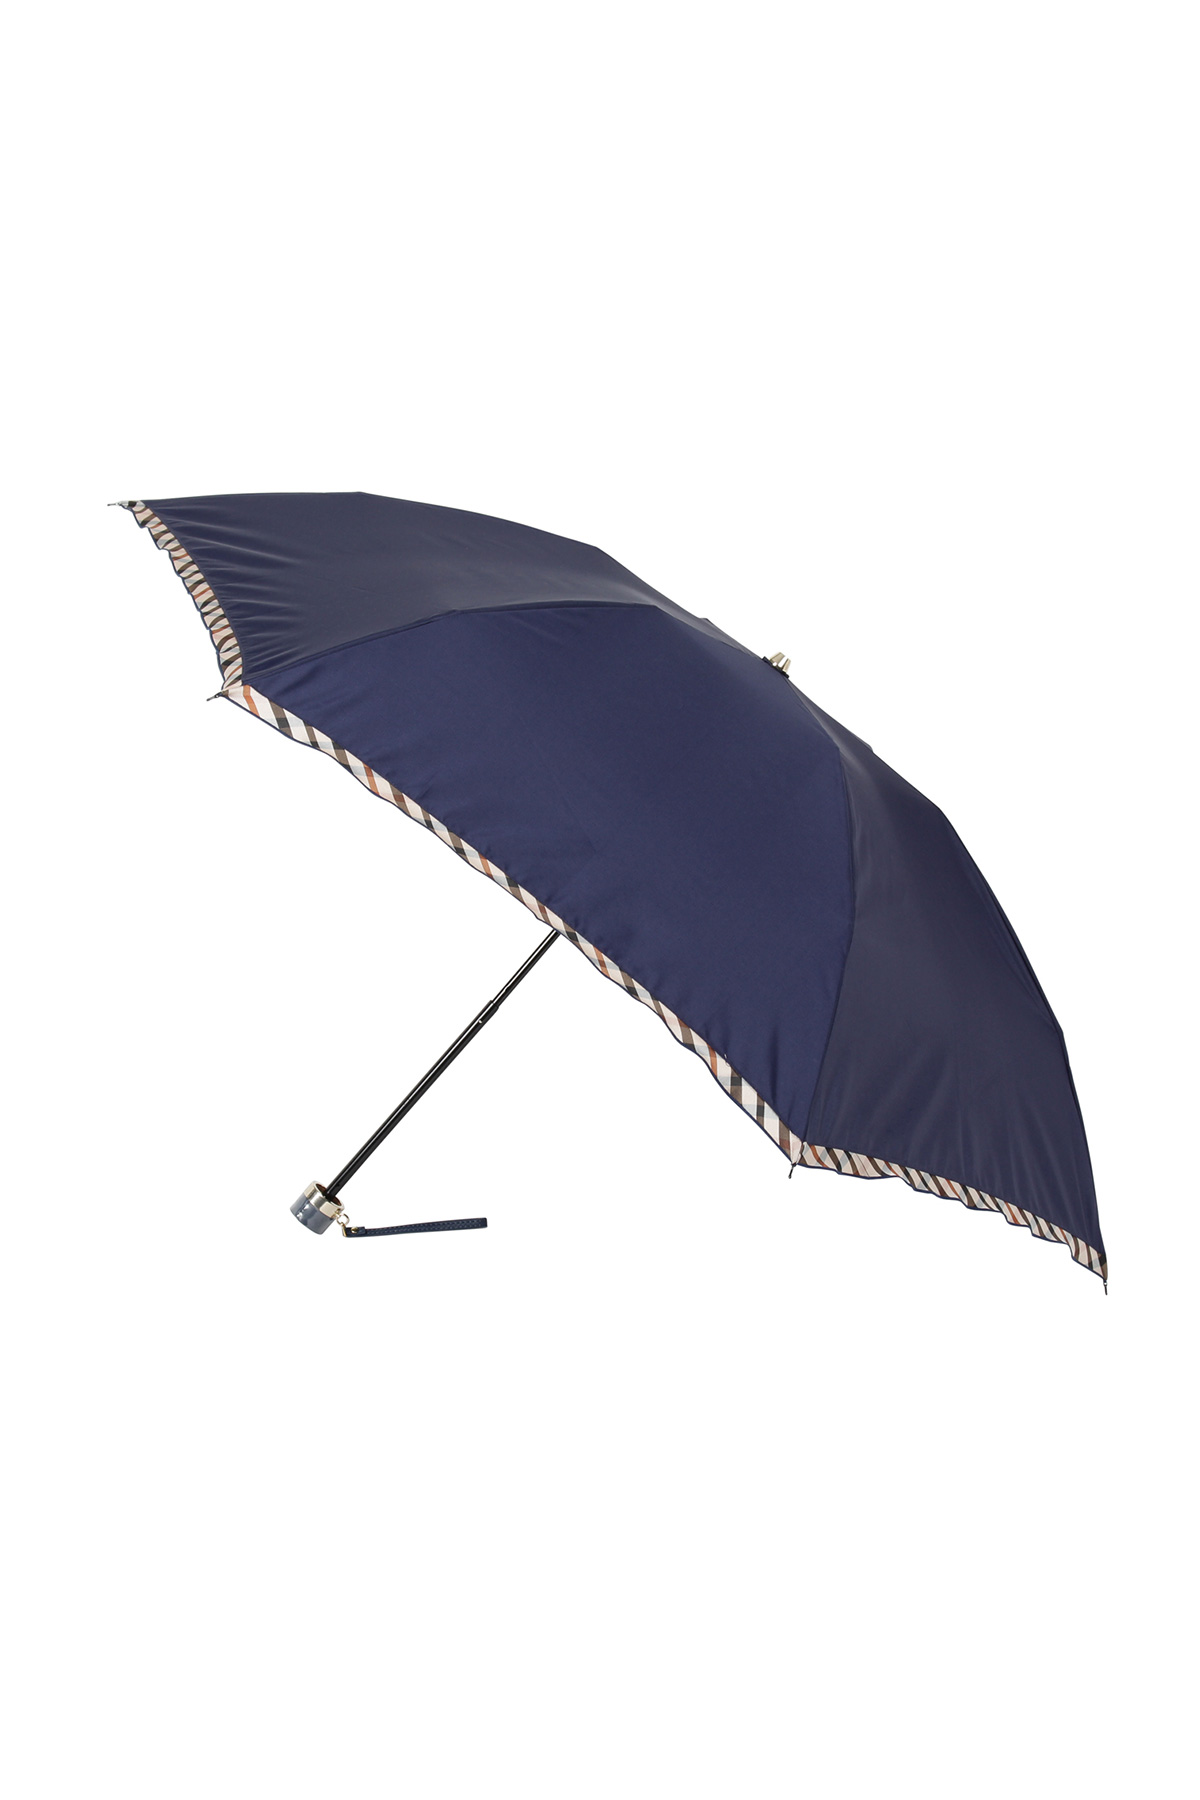 【雨傘】折りたたみ傘ドビーフリル 詳細画像 10